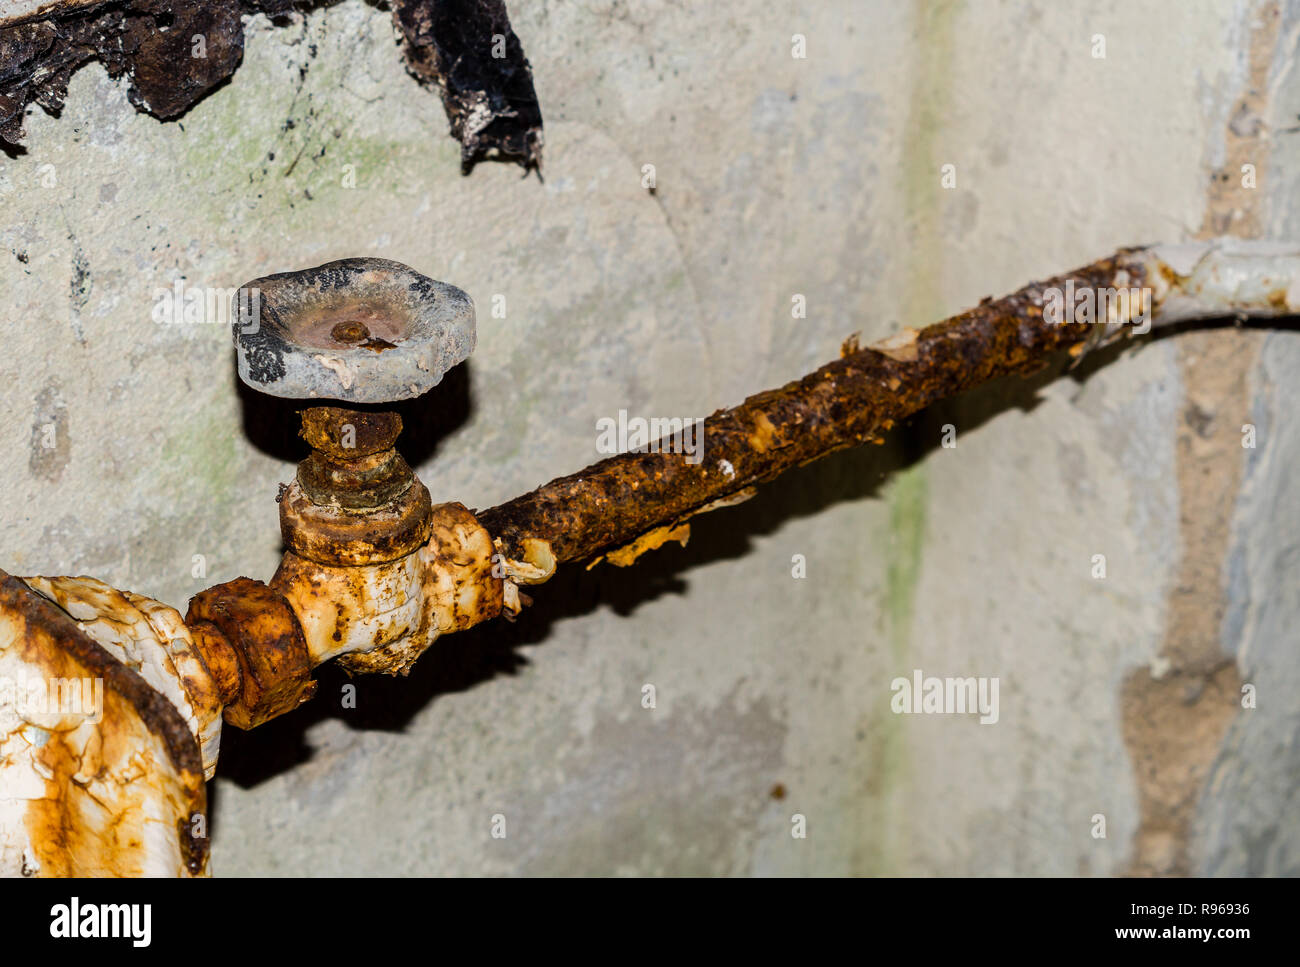 Old rusty heating valve Stock Photo